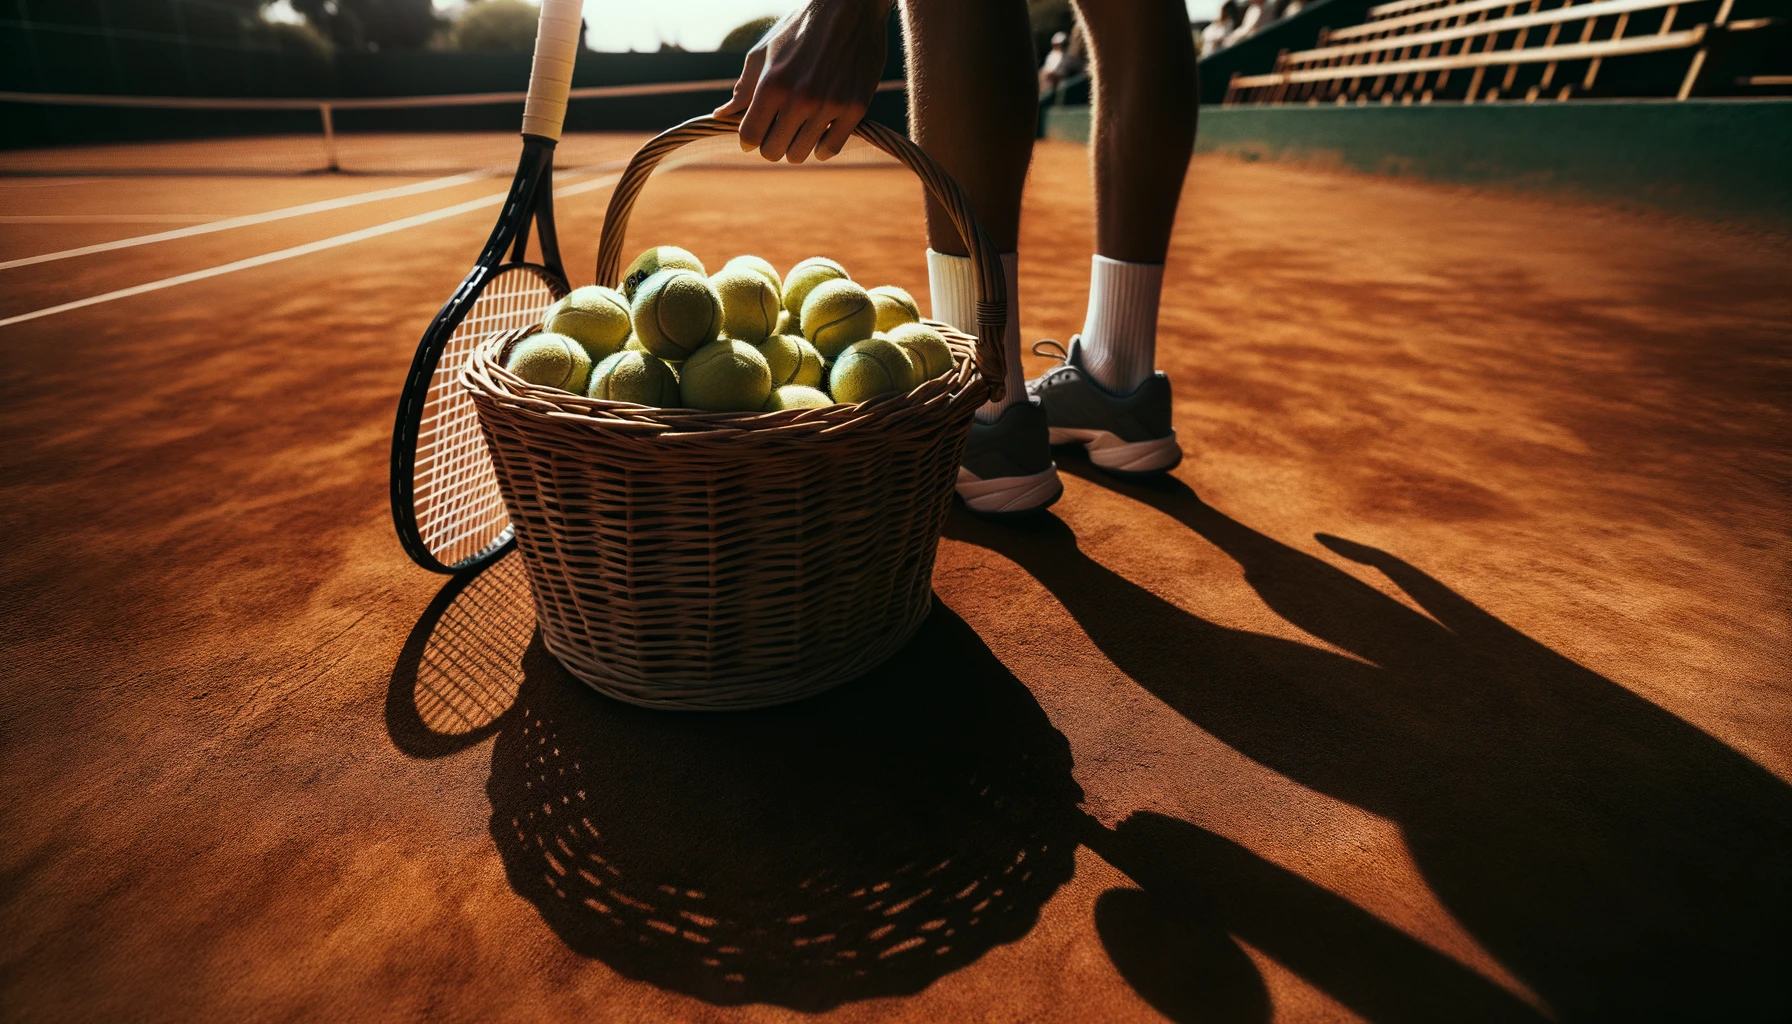 Foto eines mit Tennisbällen gefüllten Korbs am Rande eines Sandtennisplatzes.